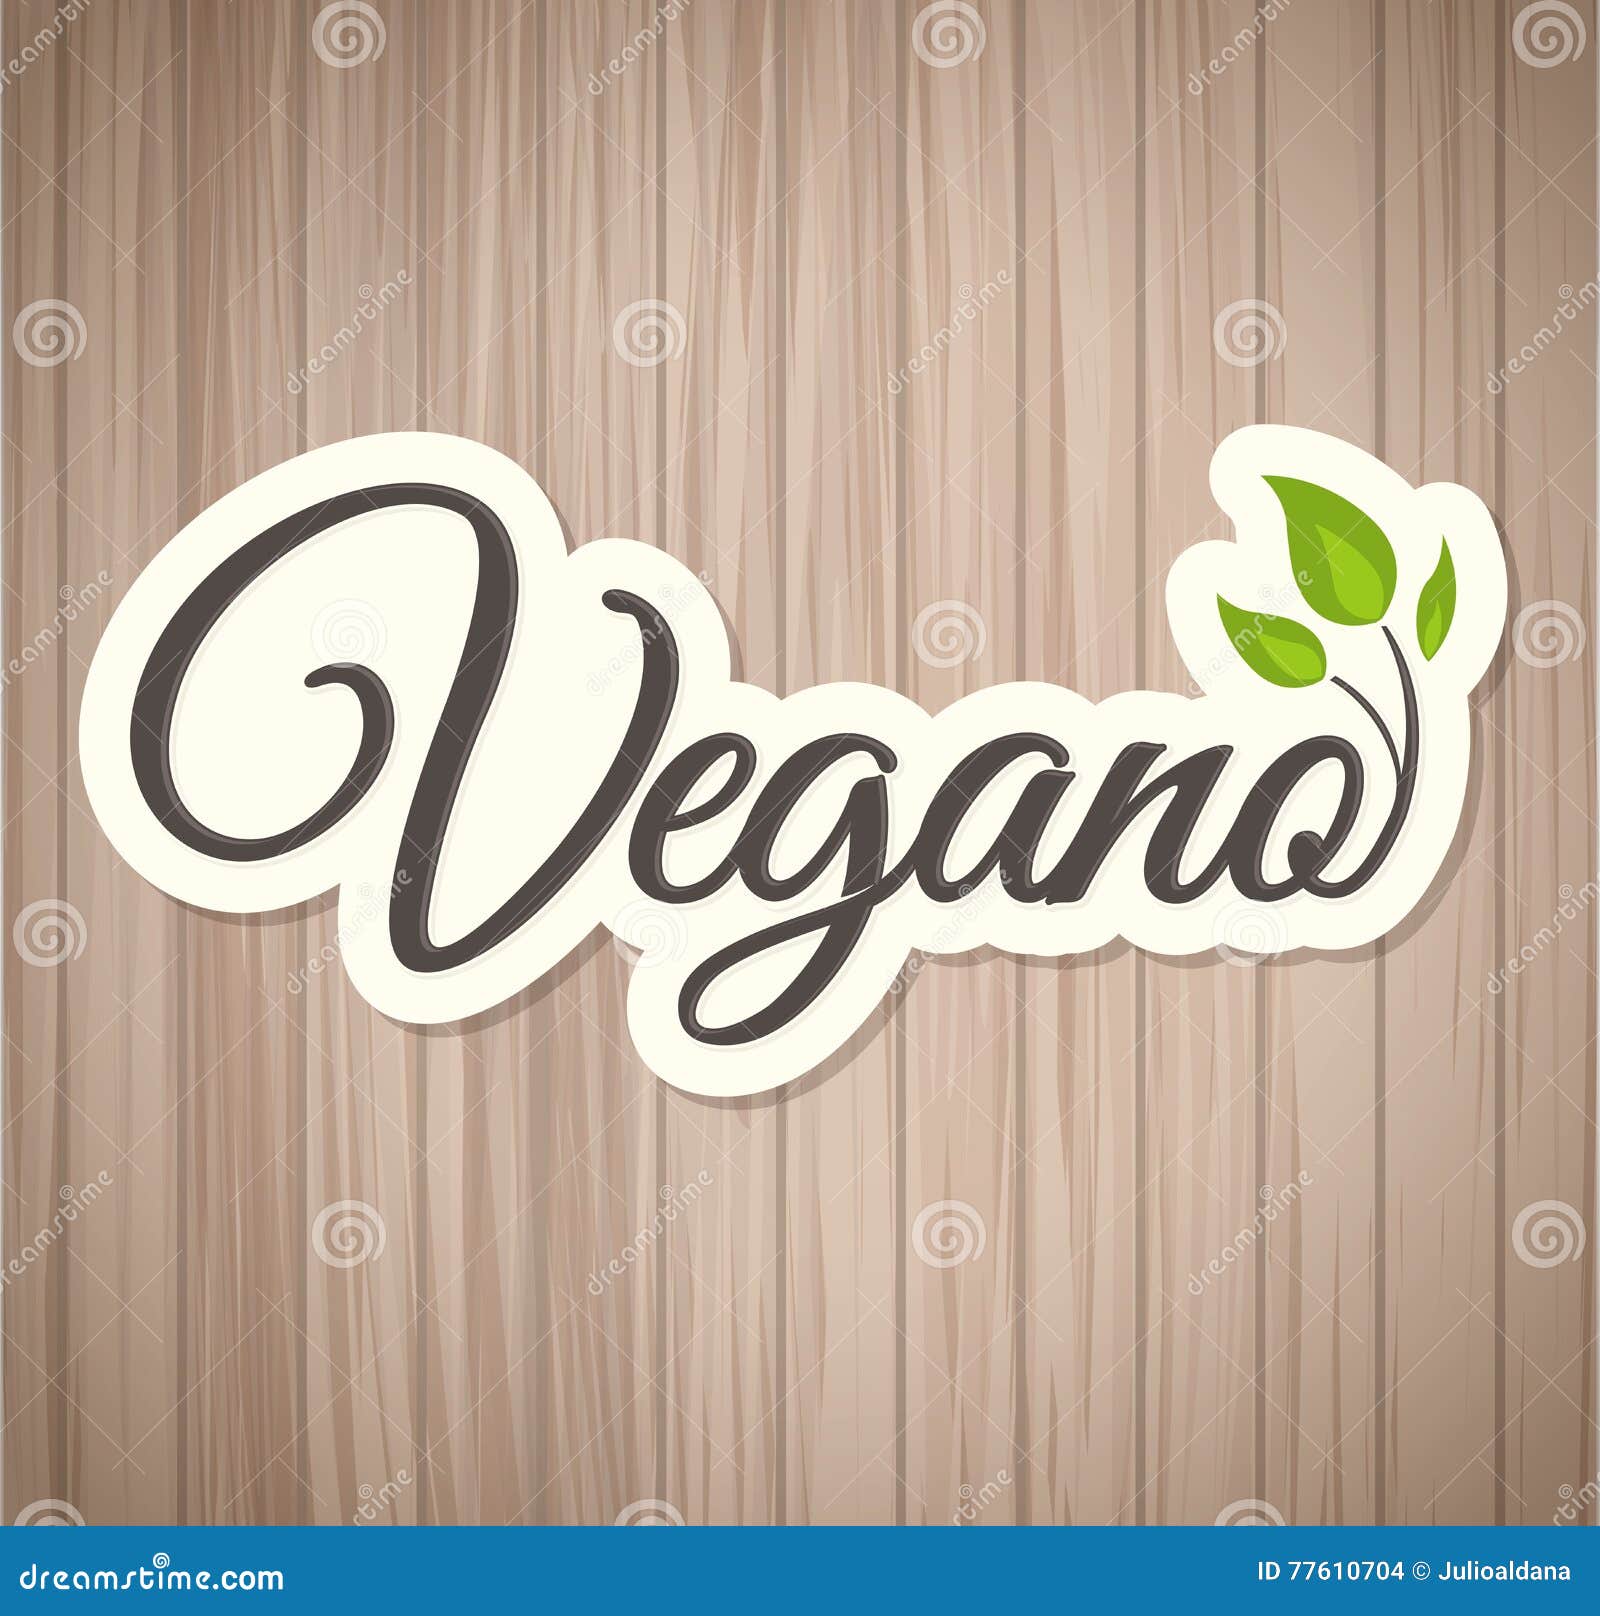 vegano - vegan spanish text,  icon 